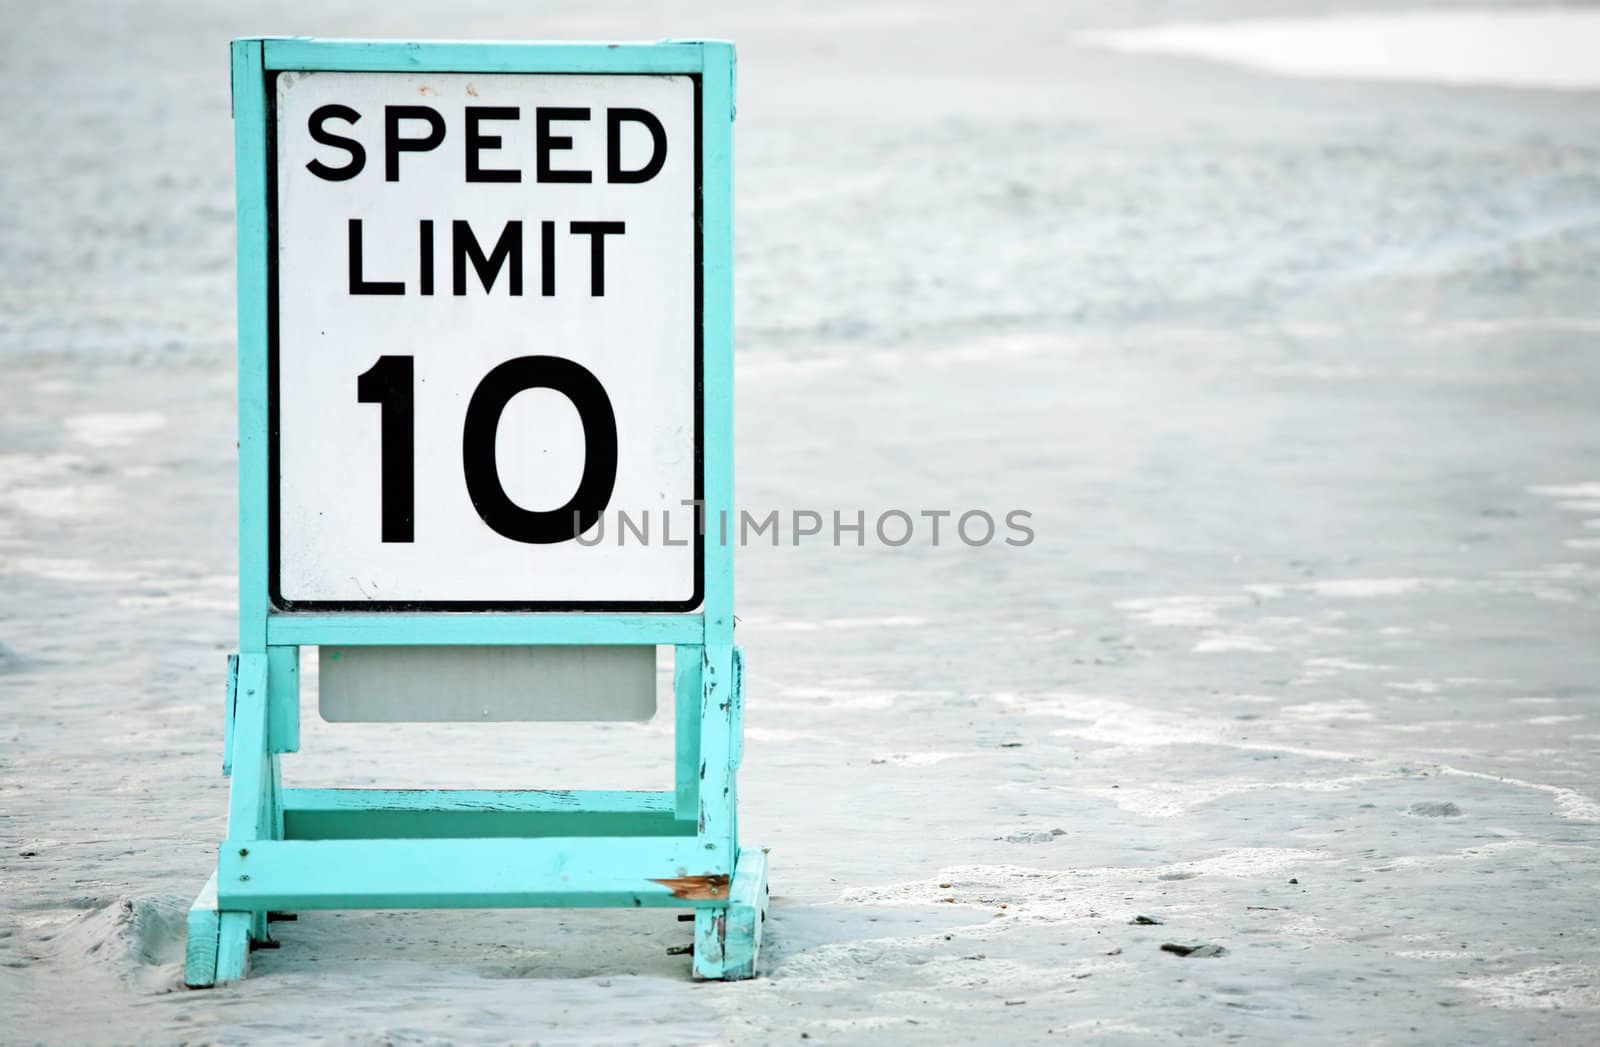 Posted speed limit on beach by jarenwicklund